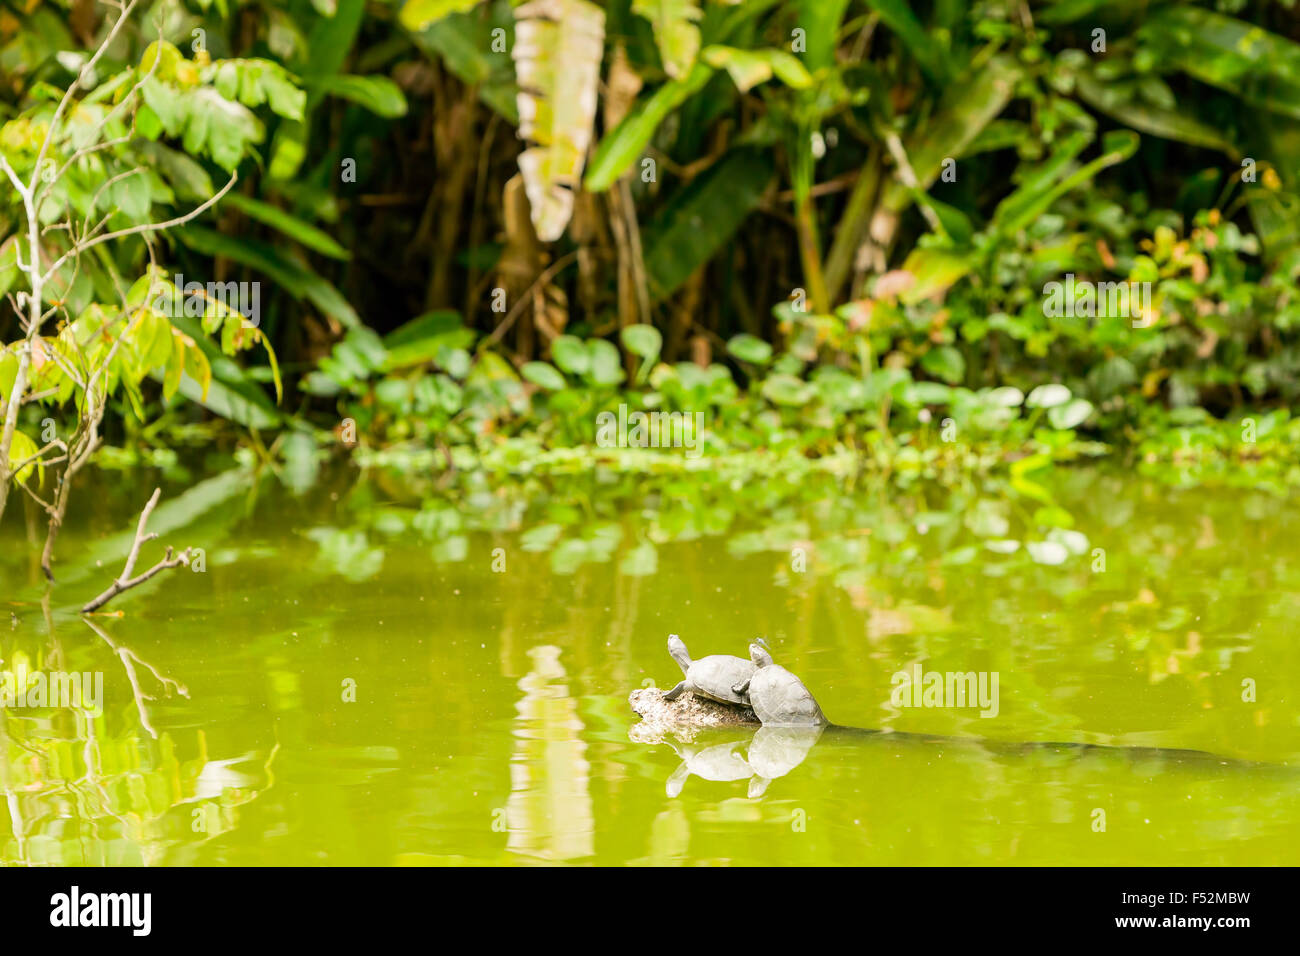 Wild tartarughe in Amazzonia ecuadoriana a piena dimensione che si potrebbe vedere un insetto seduta su di essi Foto Stock